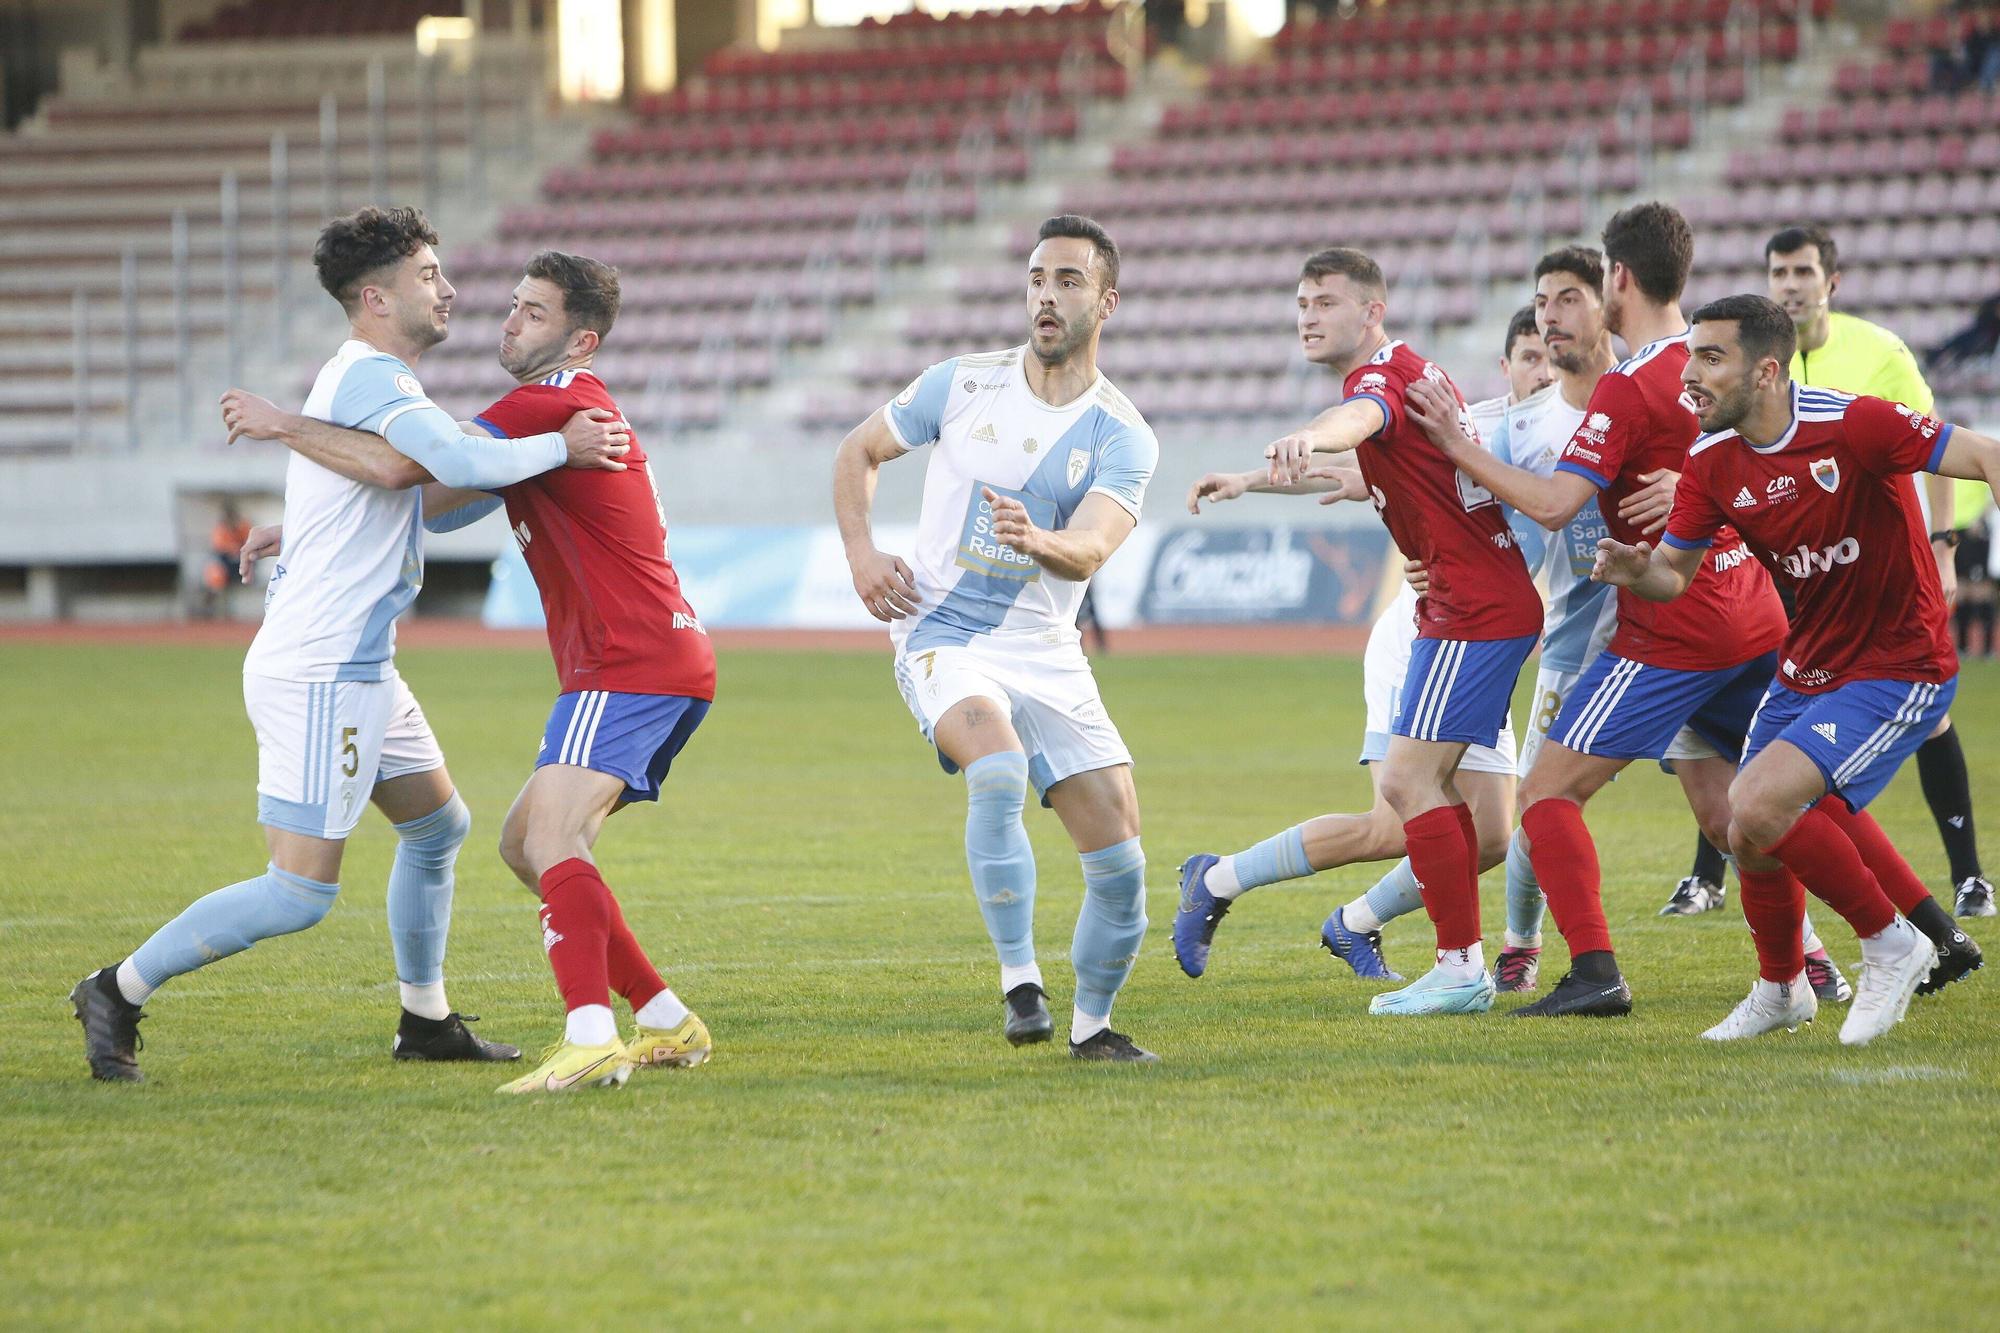 Compostela 0 - 0 Bergantiños: las imágenes del partido